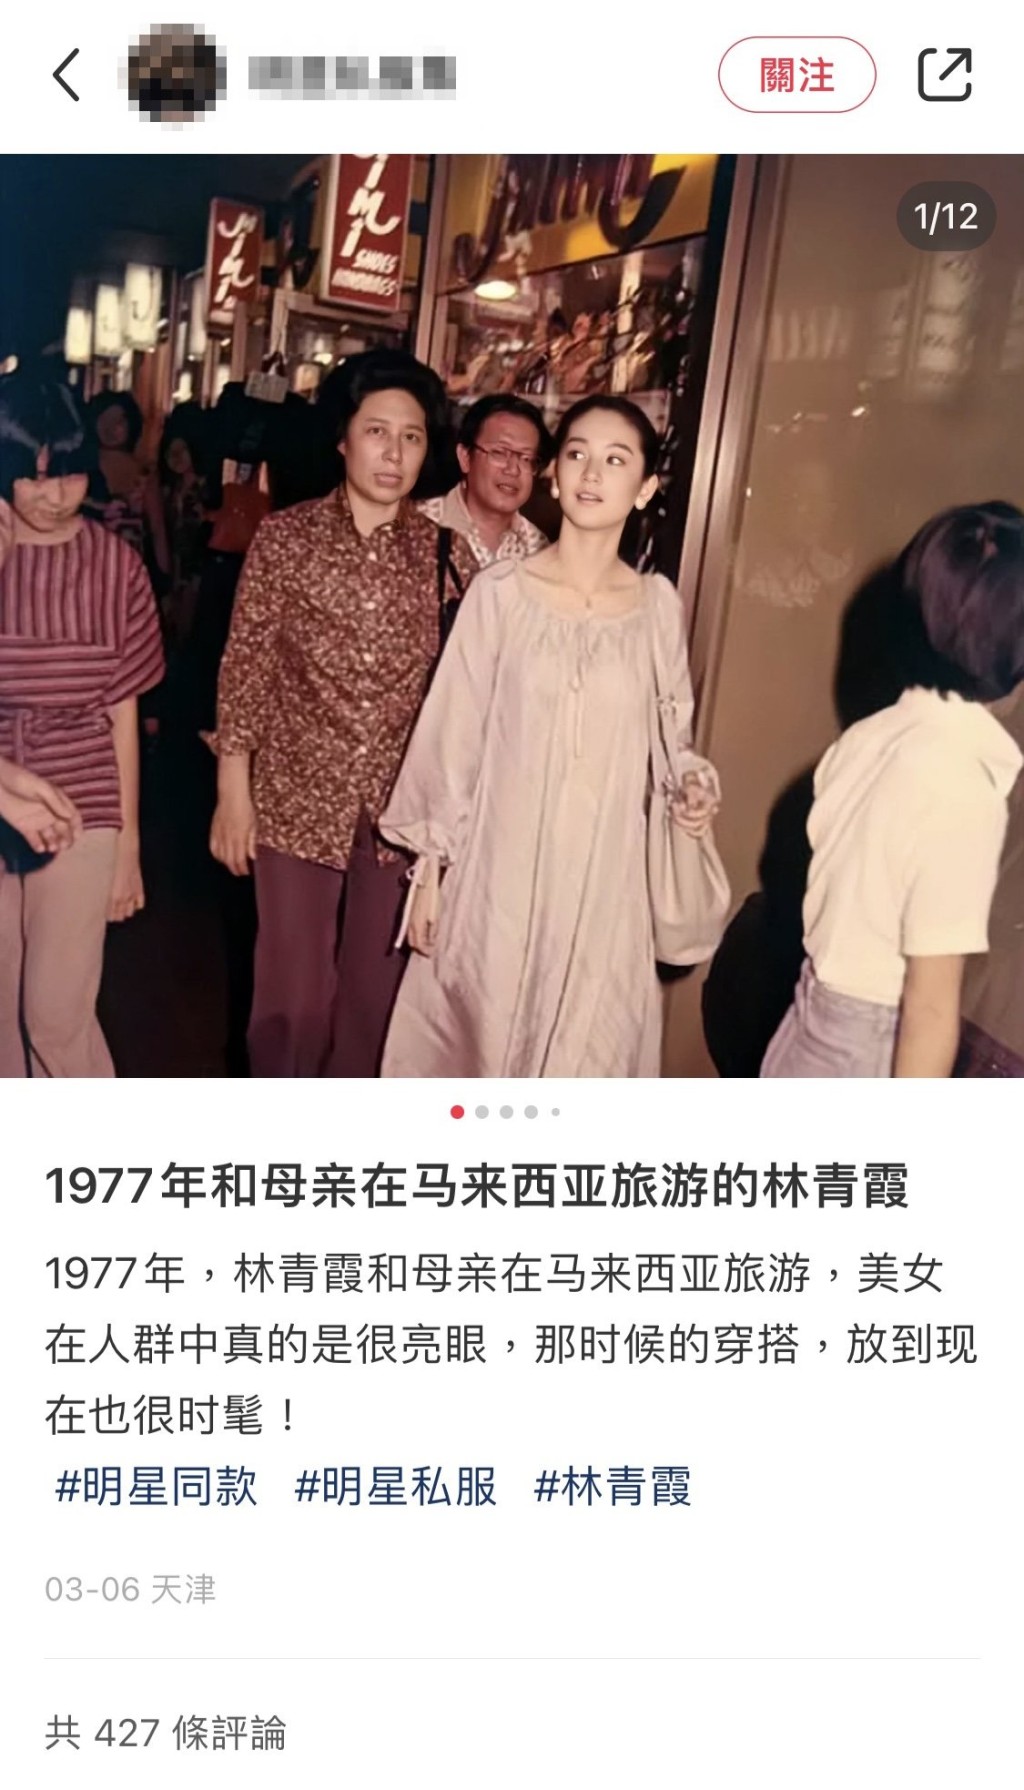 林青霞1977年游大马的照片，亦曾突然在网上流传。